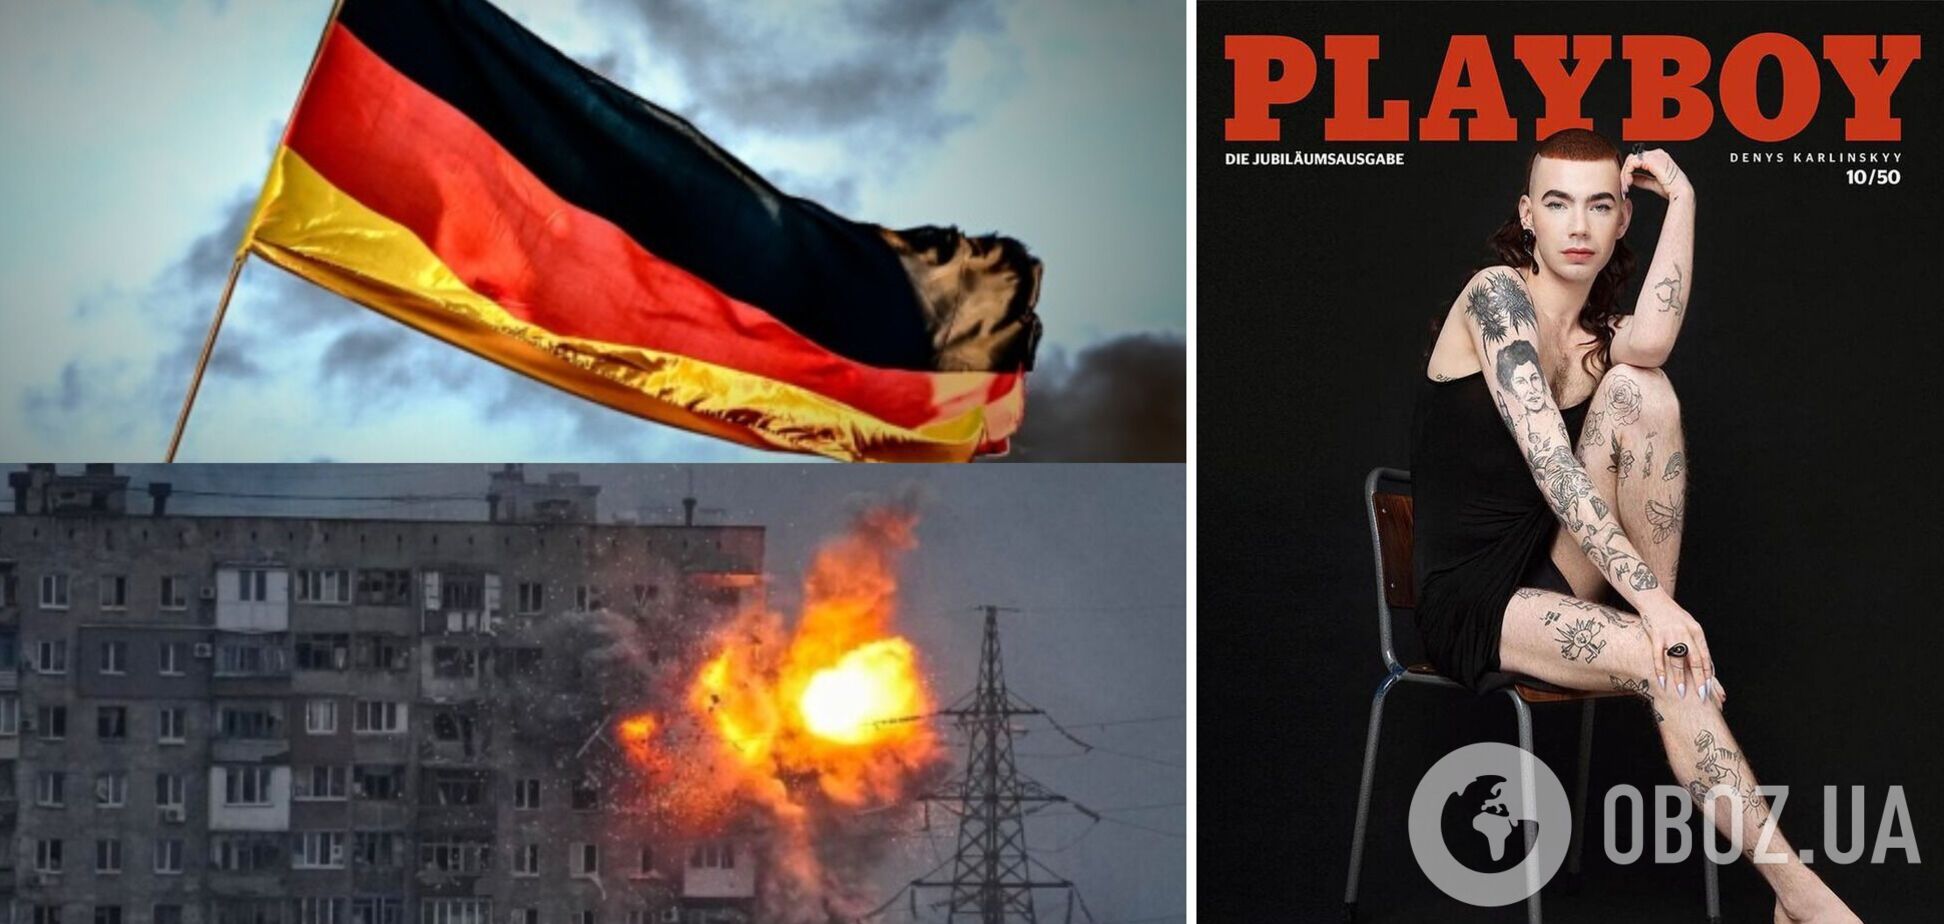 Немецкий Playboy попал в скандал из-за смелой обложки. Снимок делал фотограф из Мариуполя